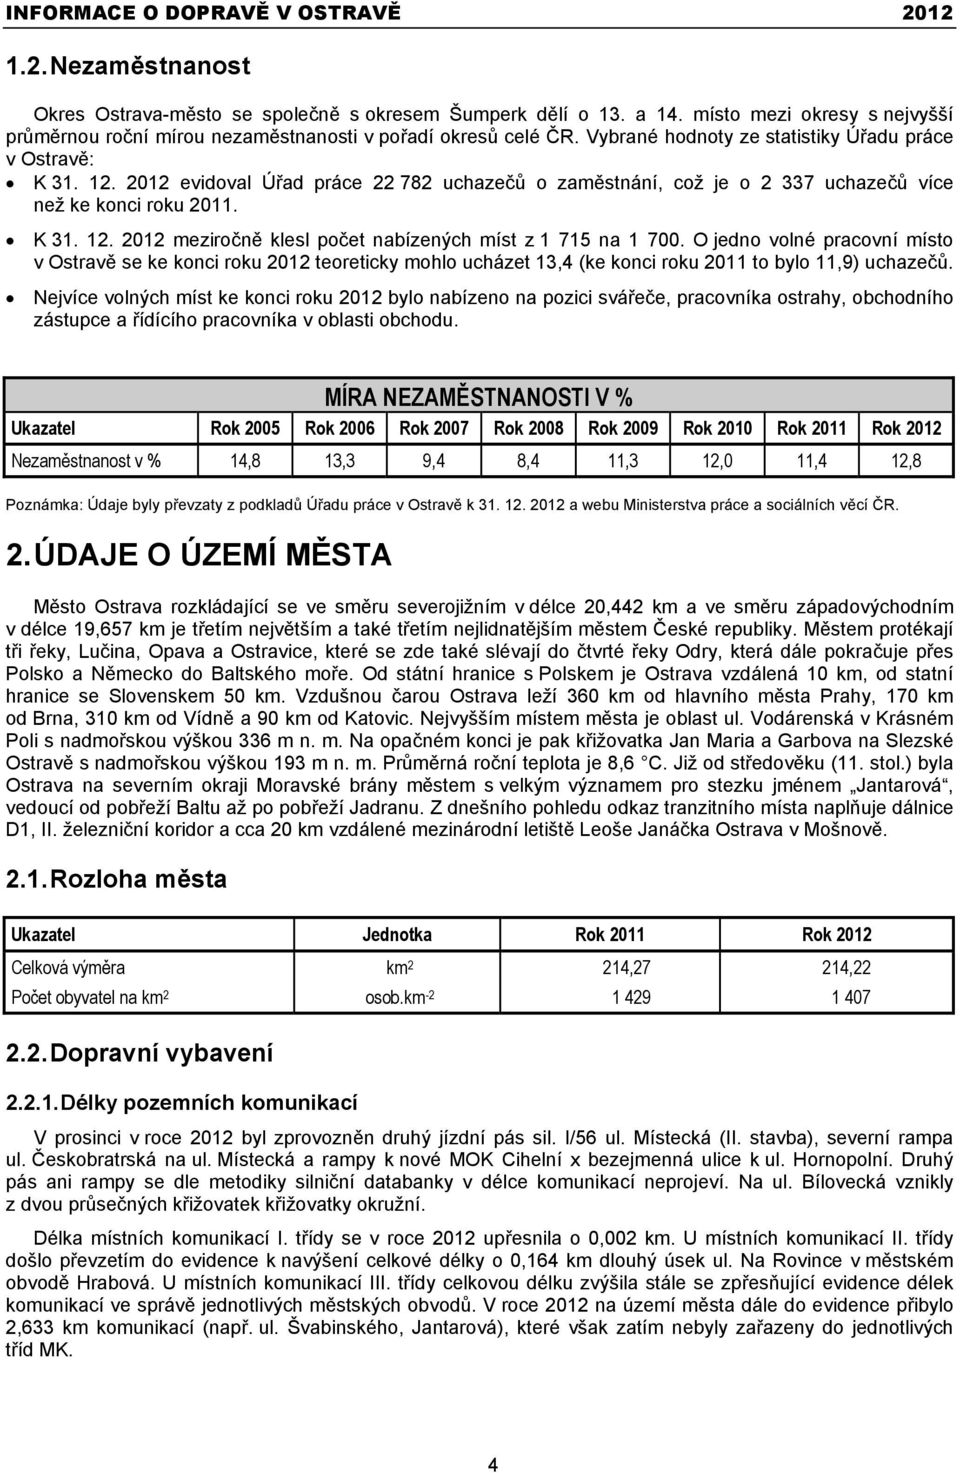 O jedno volné pracovní místo v Ostravě se ke konci roku 2012 teoreticky mohlo ucházet 13,4 (ke konci roku 2011 to bylo 11,9) uchazečů.